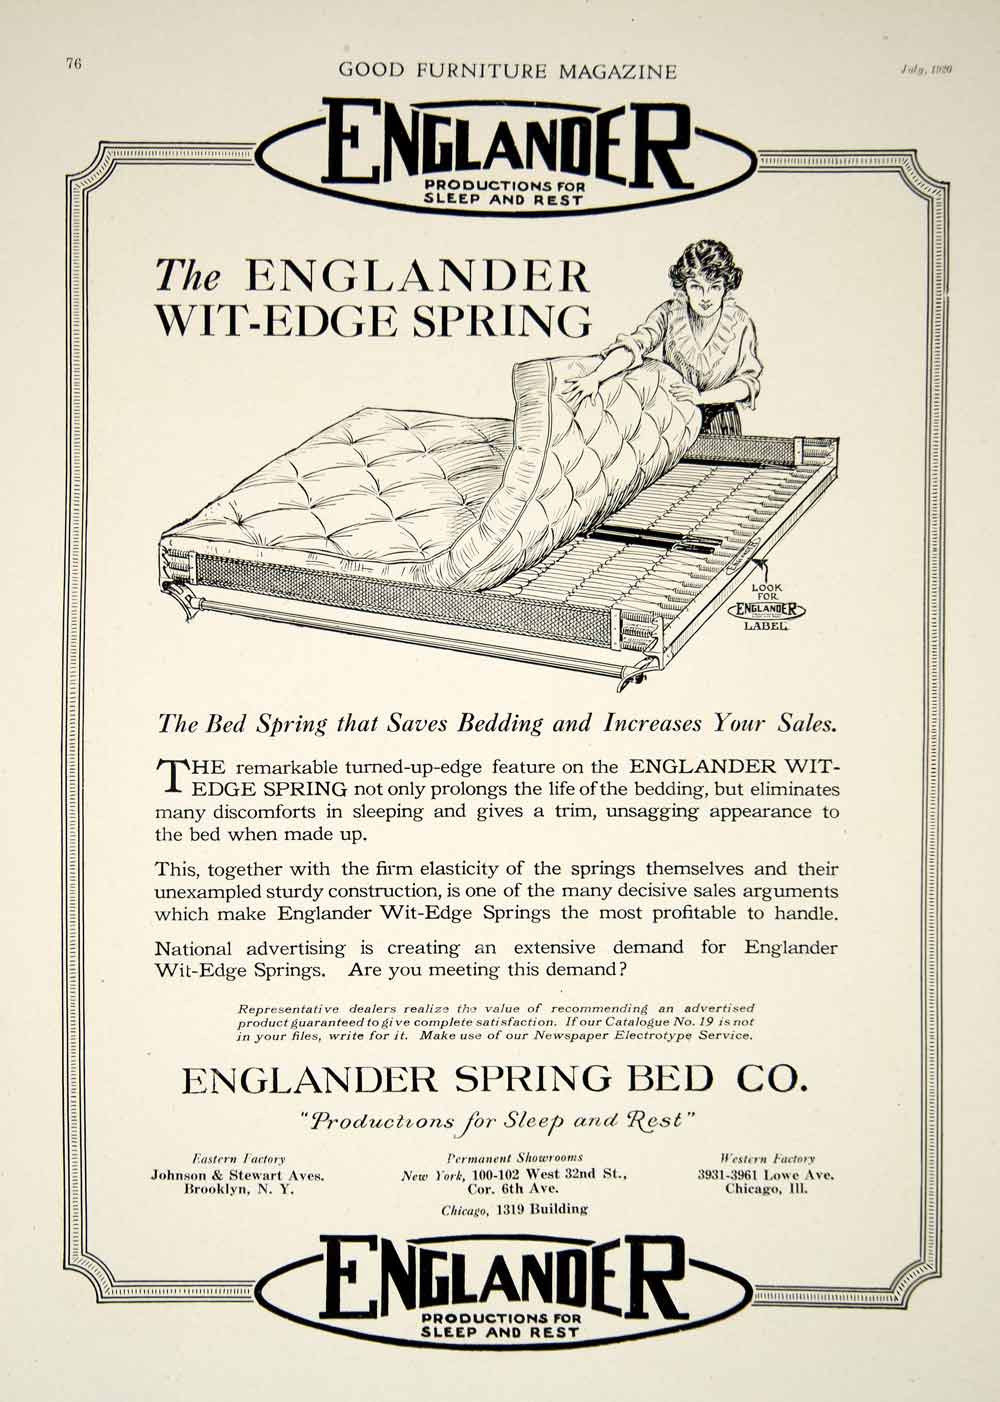 1920 Ad Vintage Englander Wit Edge Spring Bed Bedroom Furniture Bedding Gf5